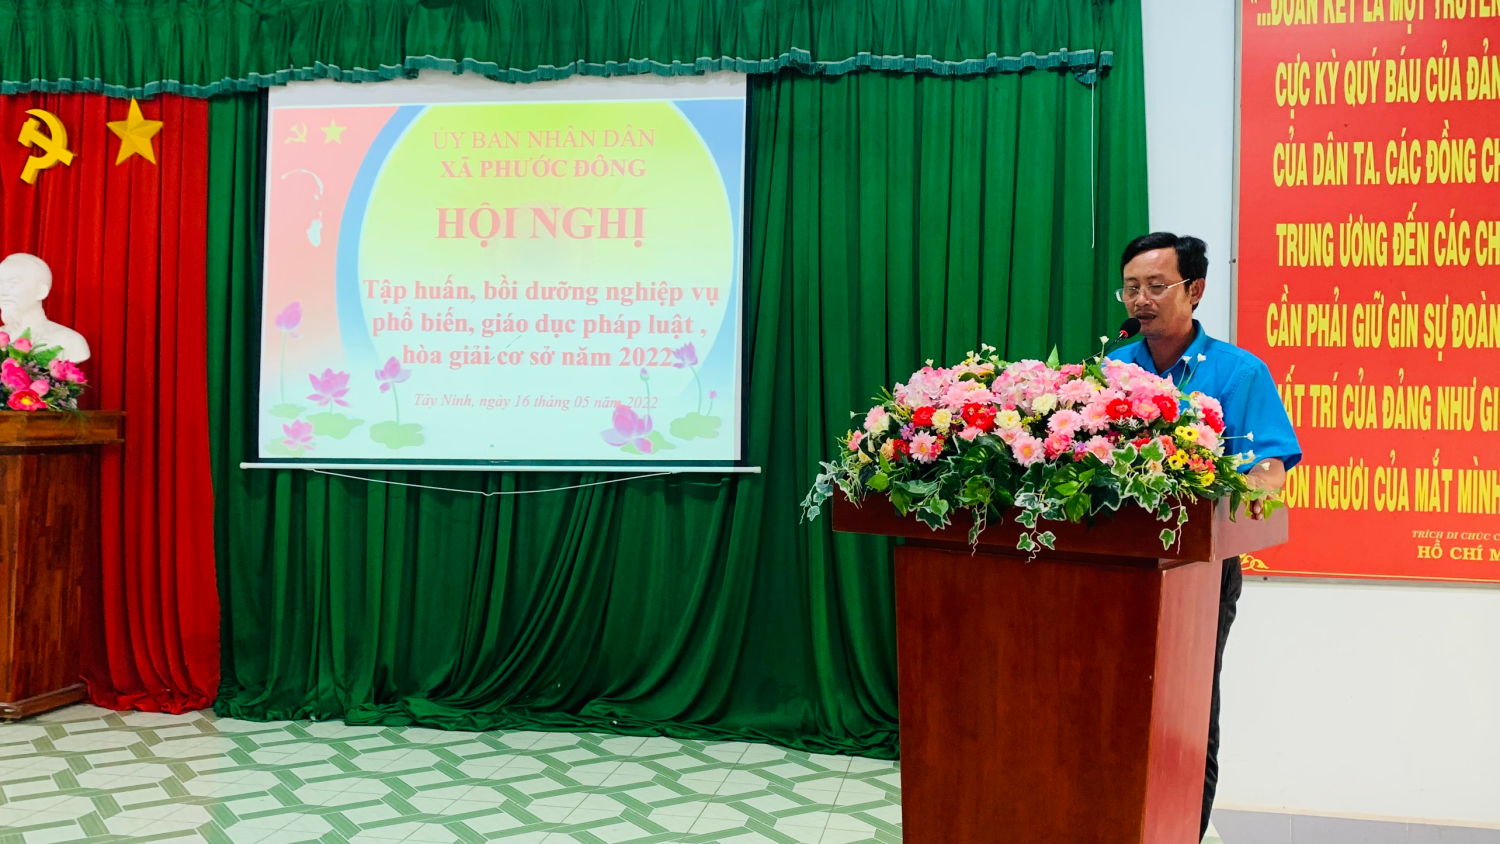 UBND xã Phước Đông, huyện Gò Dầu, tổ chức Hội nghị tập huấn kỹ năng phổ biến, giáo dục pháp luật và nghiệp vụ hoà giải ở cơ sở năm 2022